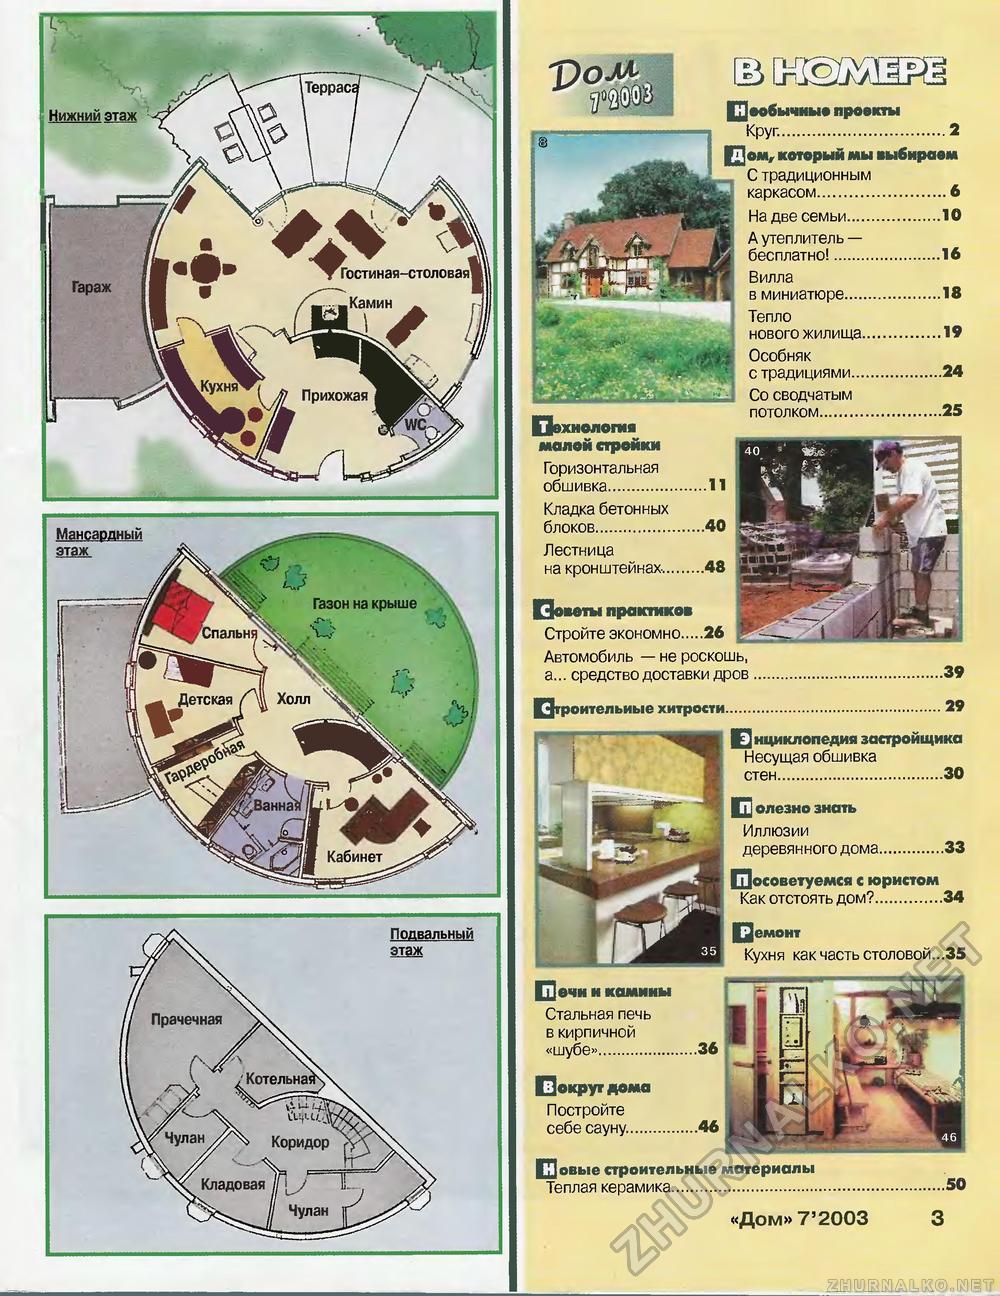 Дом 2003-07, страница 3